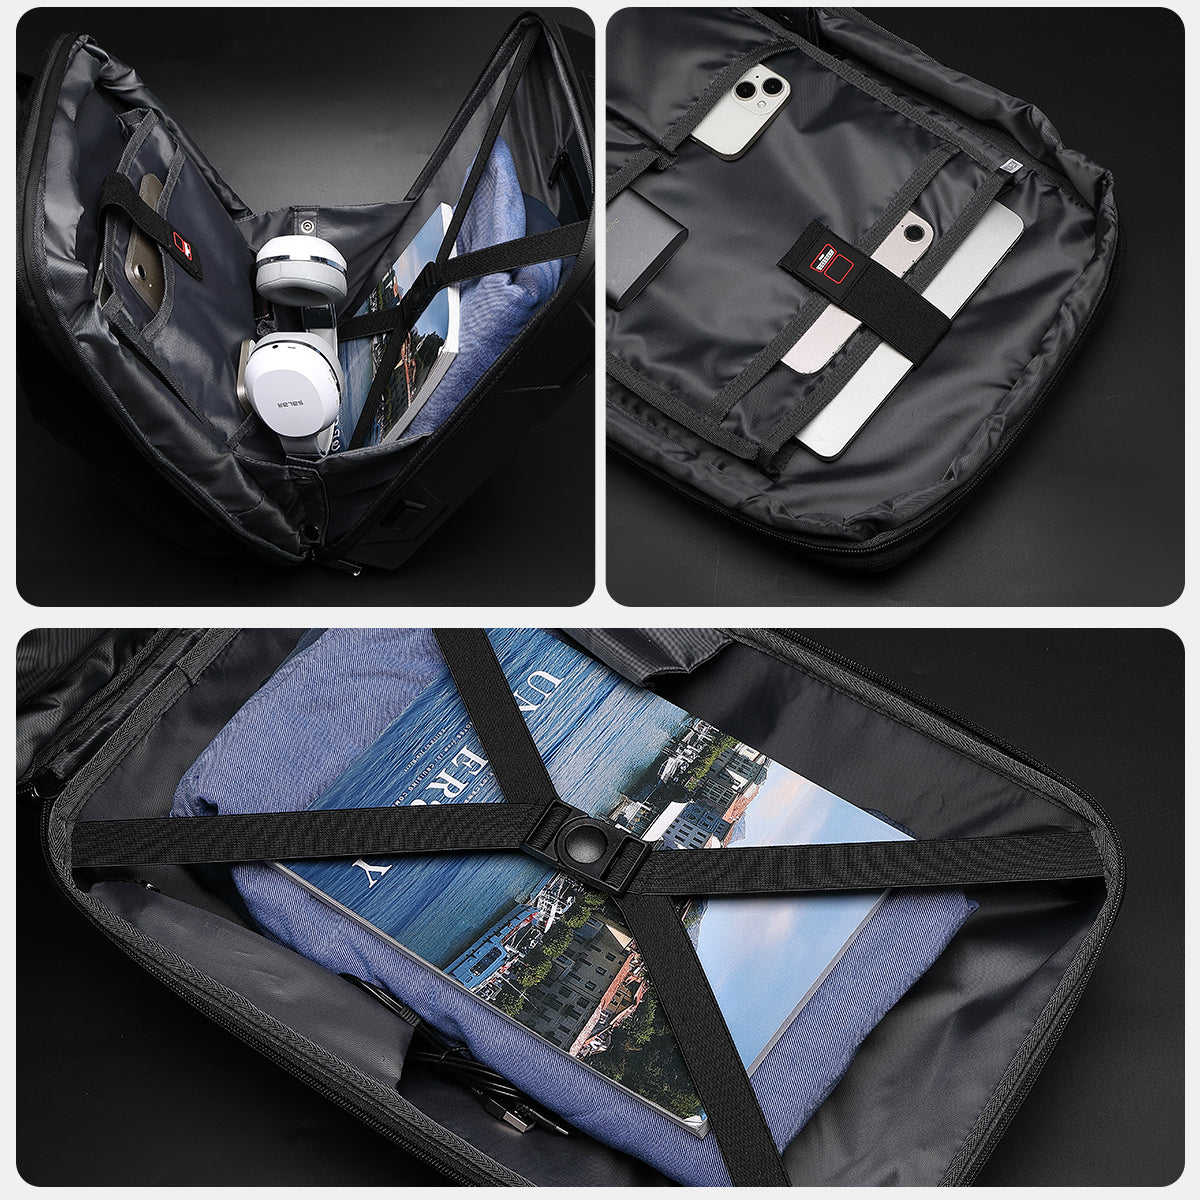 Erweiterbare und funktionale Cyberbackpack-Laptoptasche für Business, Gaming und Reisen – langlebig, stilvoll und sicher, ausgestattet mit USB-Ladeanschluss